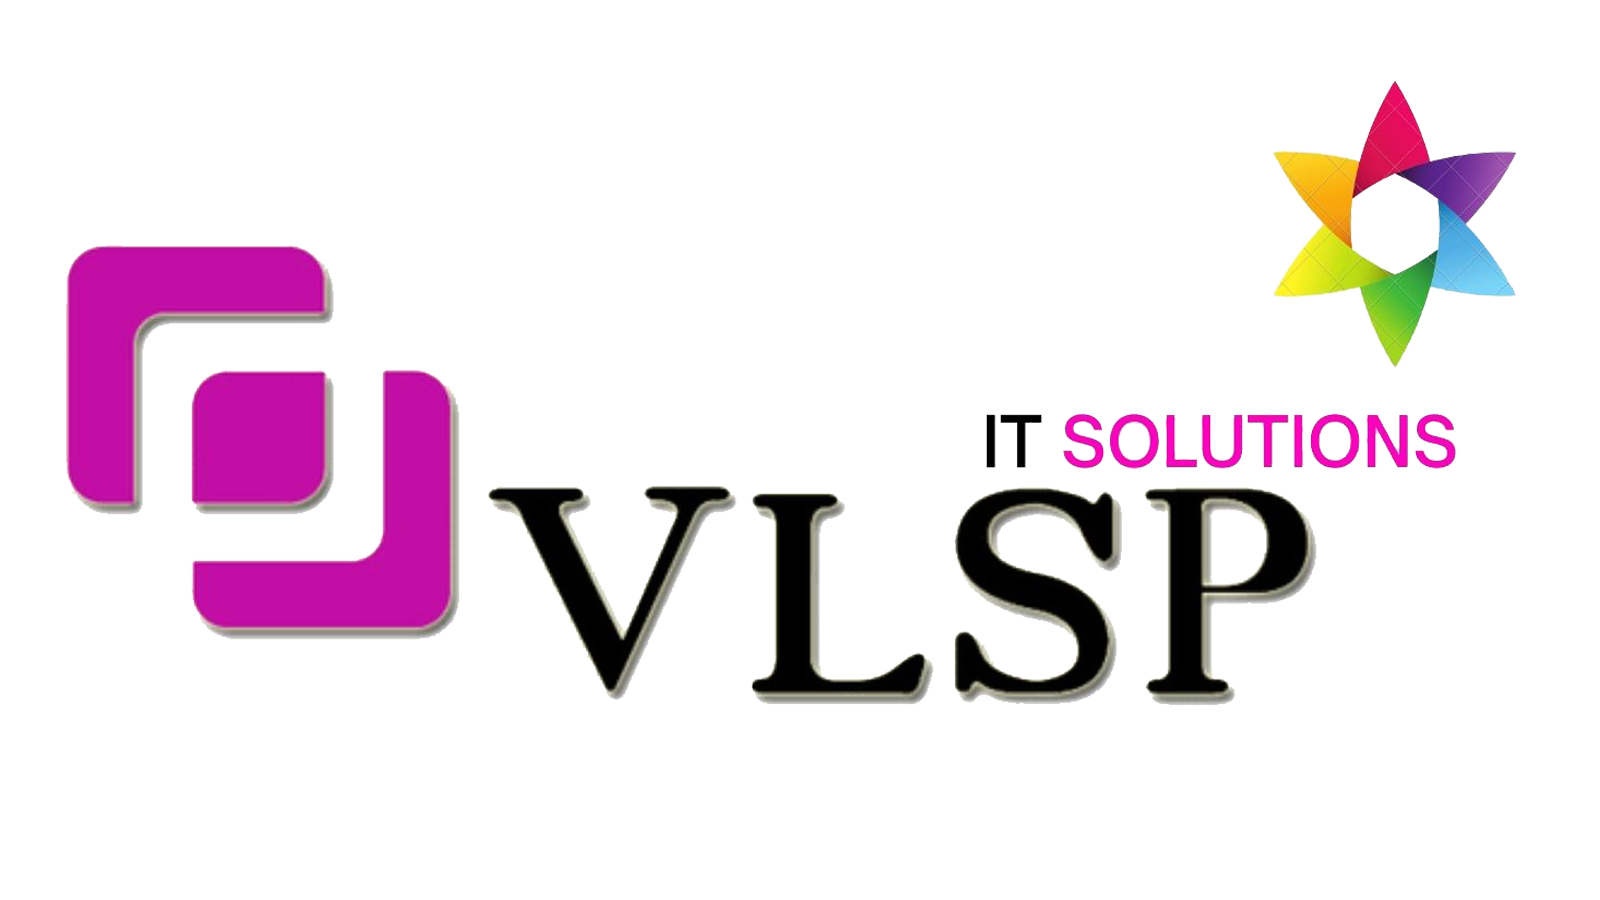 VLSP-IT-Solutions